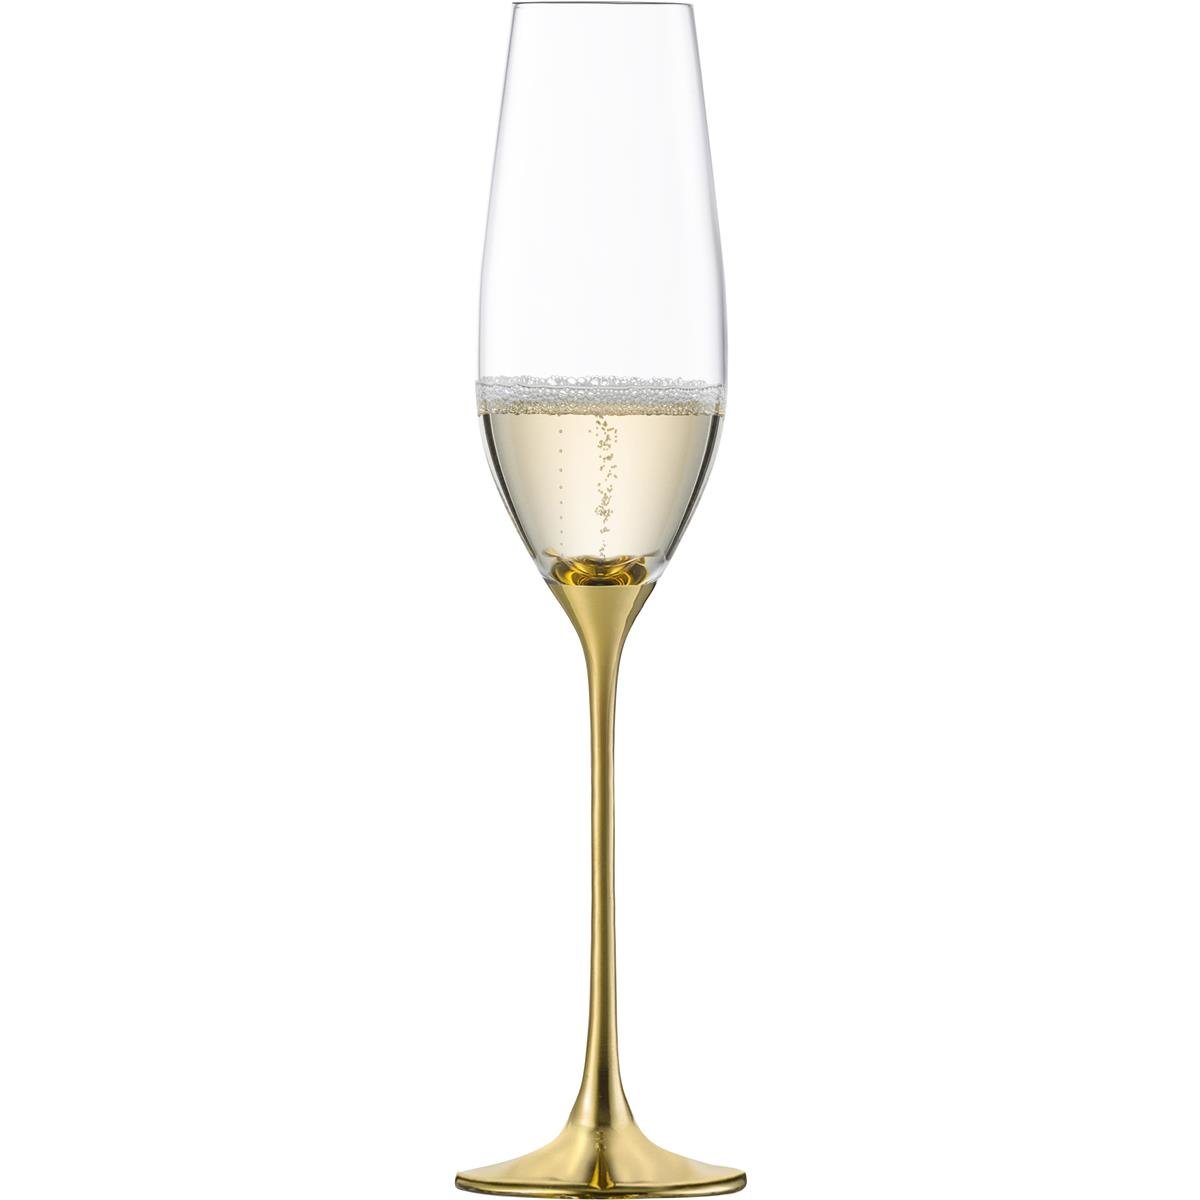 2 Eisch 500/94 Sektgläser/Champagner-Kelche € 99,90 Geschenk-Set Gold,